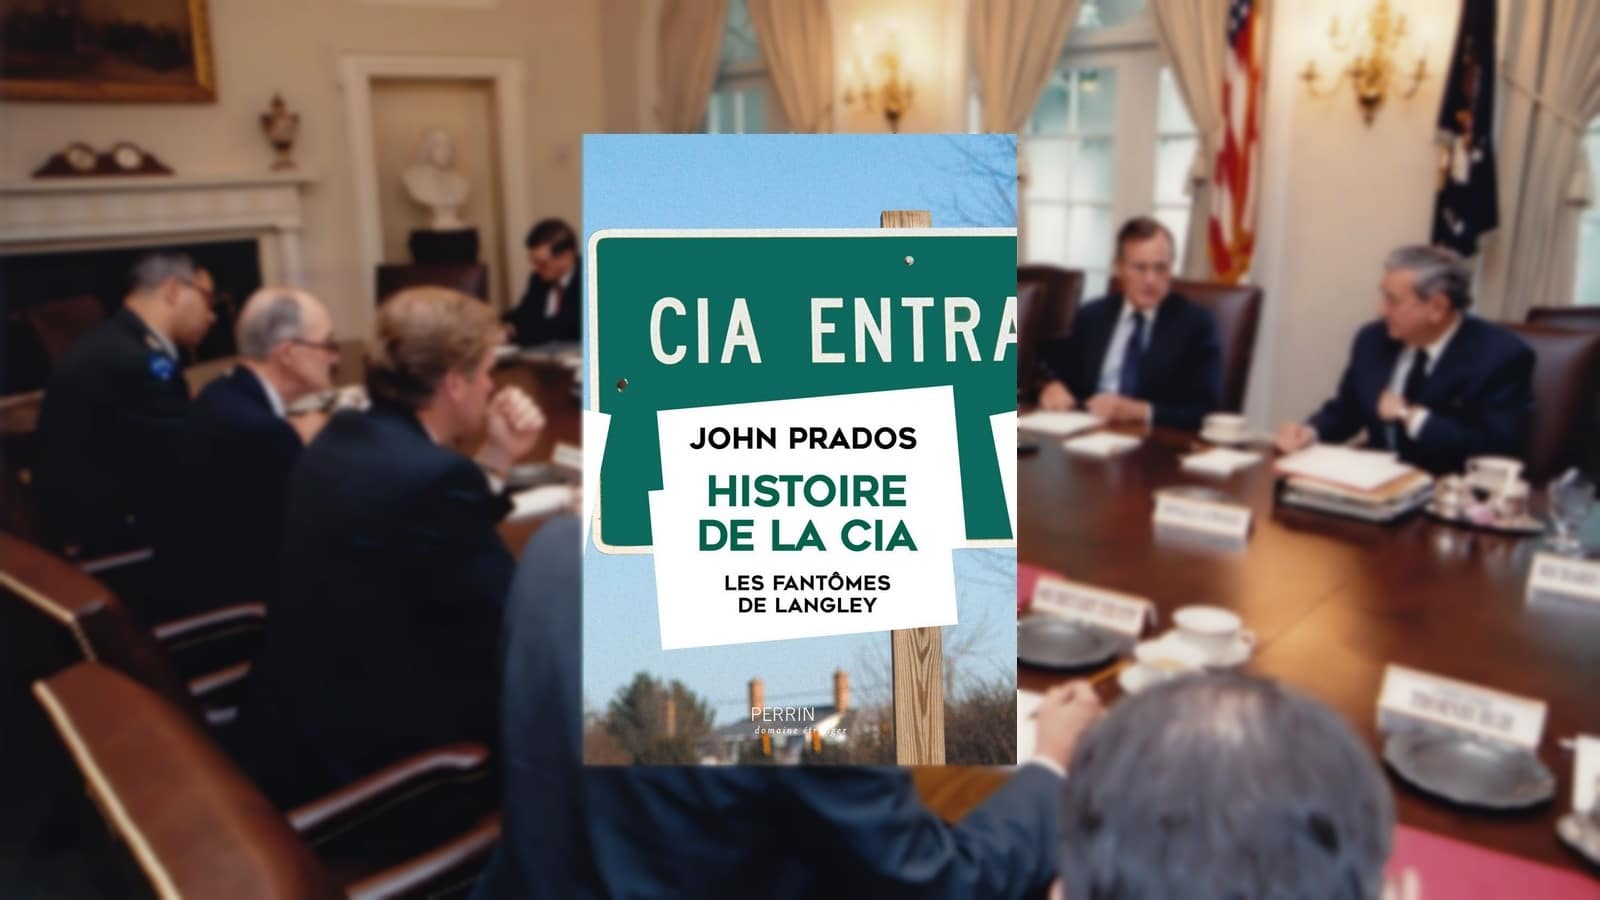 George H.W. Bush lors d'une réunion du Conseil de Sécurité National le 6 août 1990 à laquelle était convié William Wester, directeur de la CIA.

Auteurs  : ADMEDIA/SIPA
Numéro de reportage  : 00659819_000026

Histoire de la CIA, John Prados